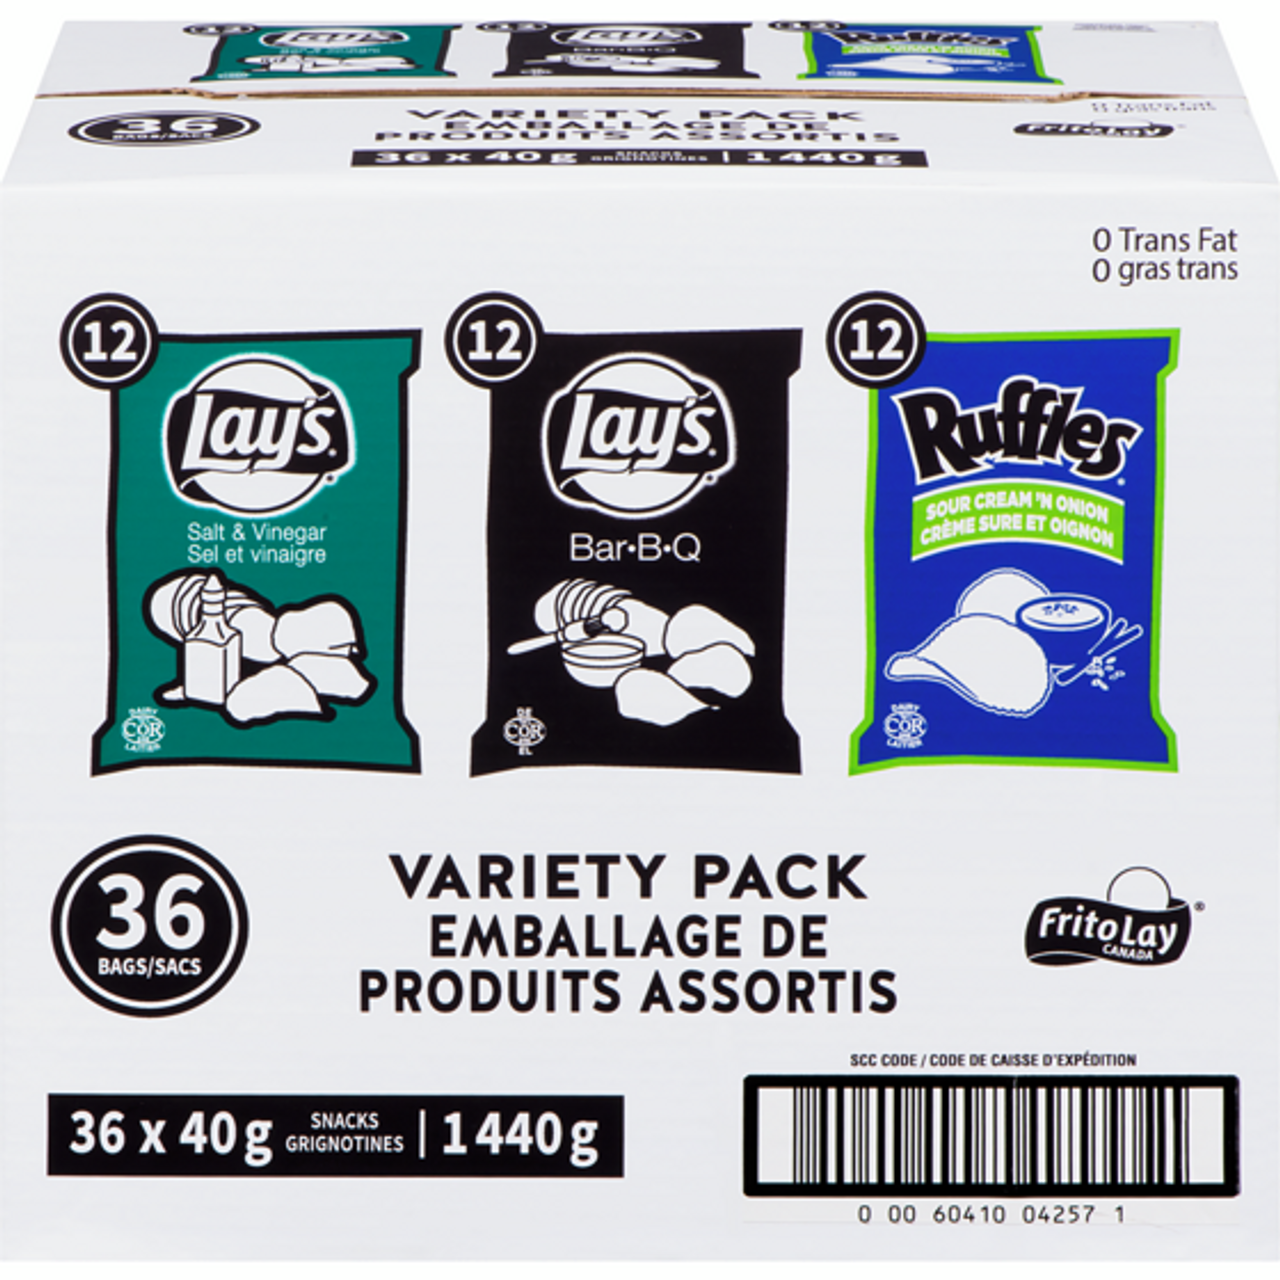 FRITOS Lay Variety Pack Potato Chips 1440 g